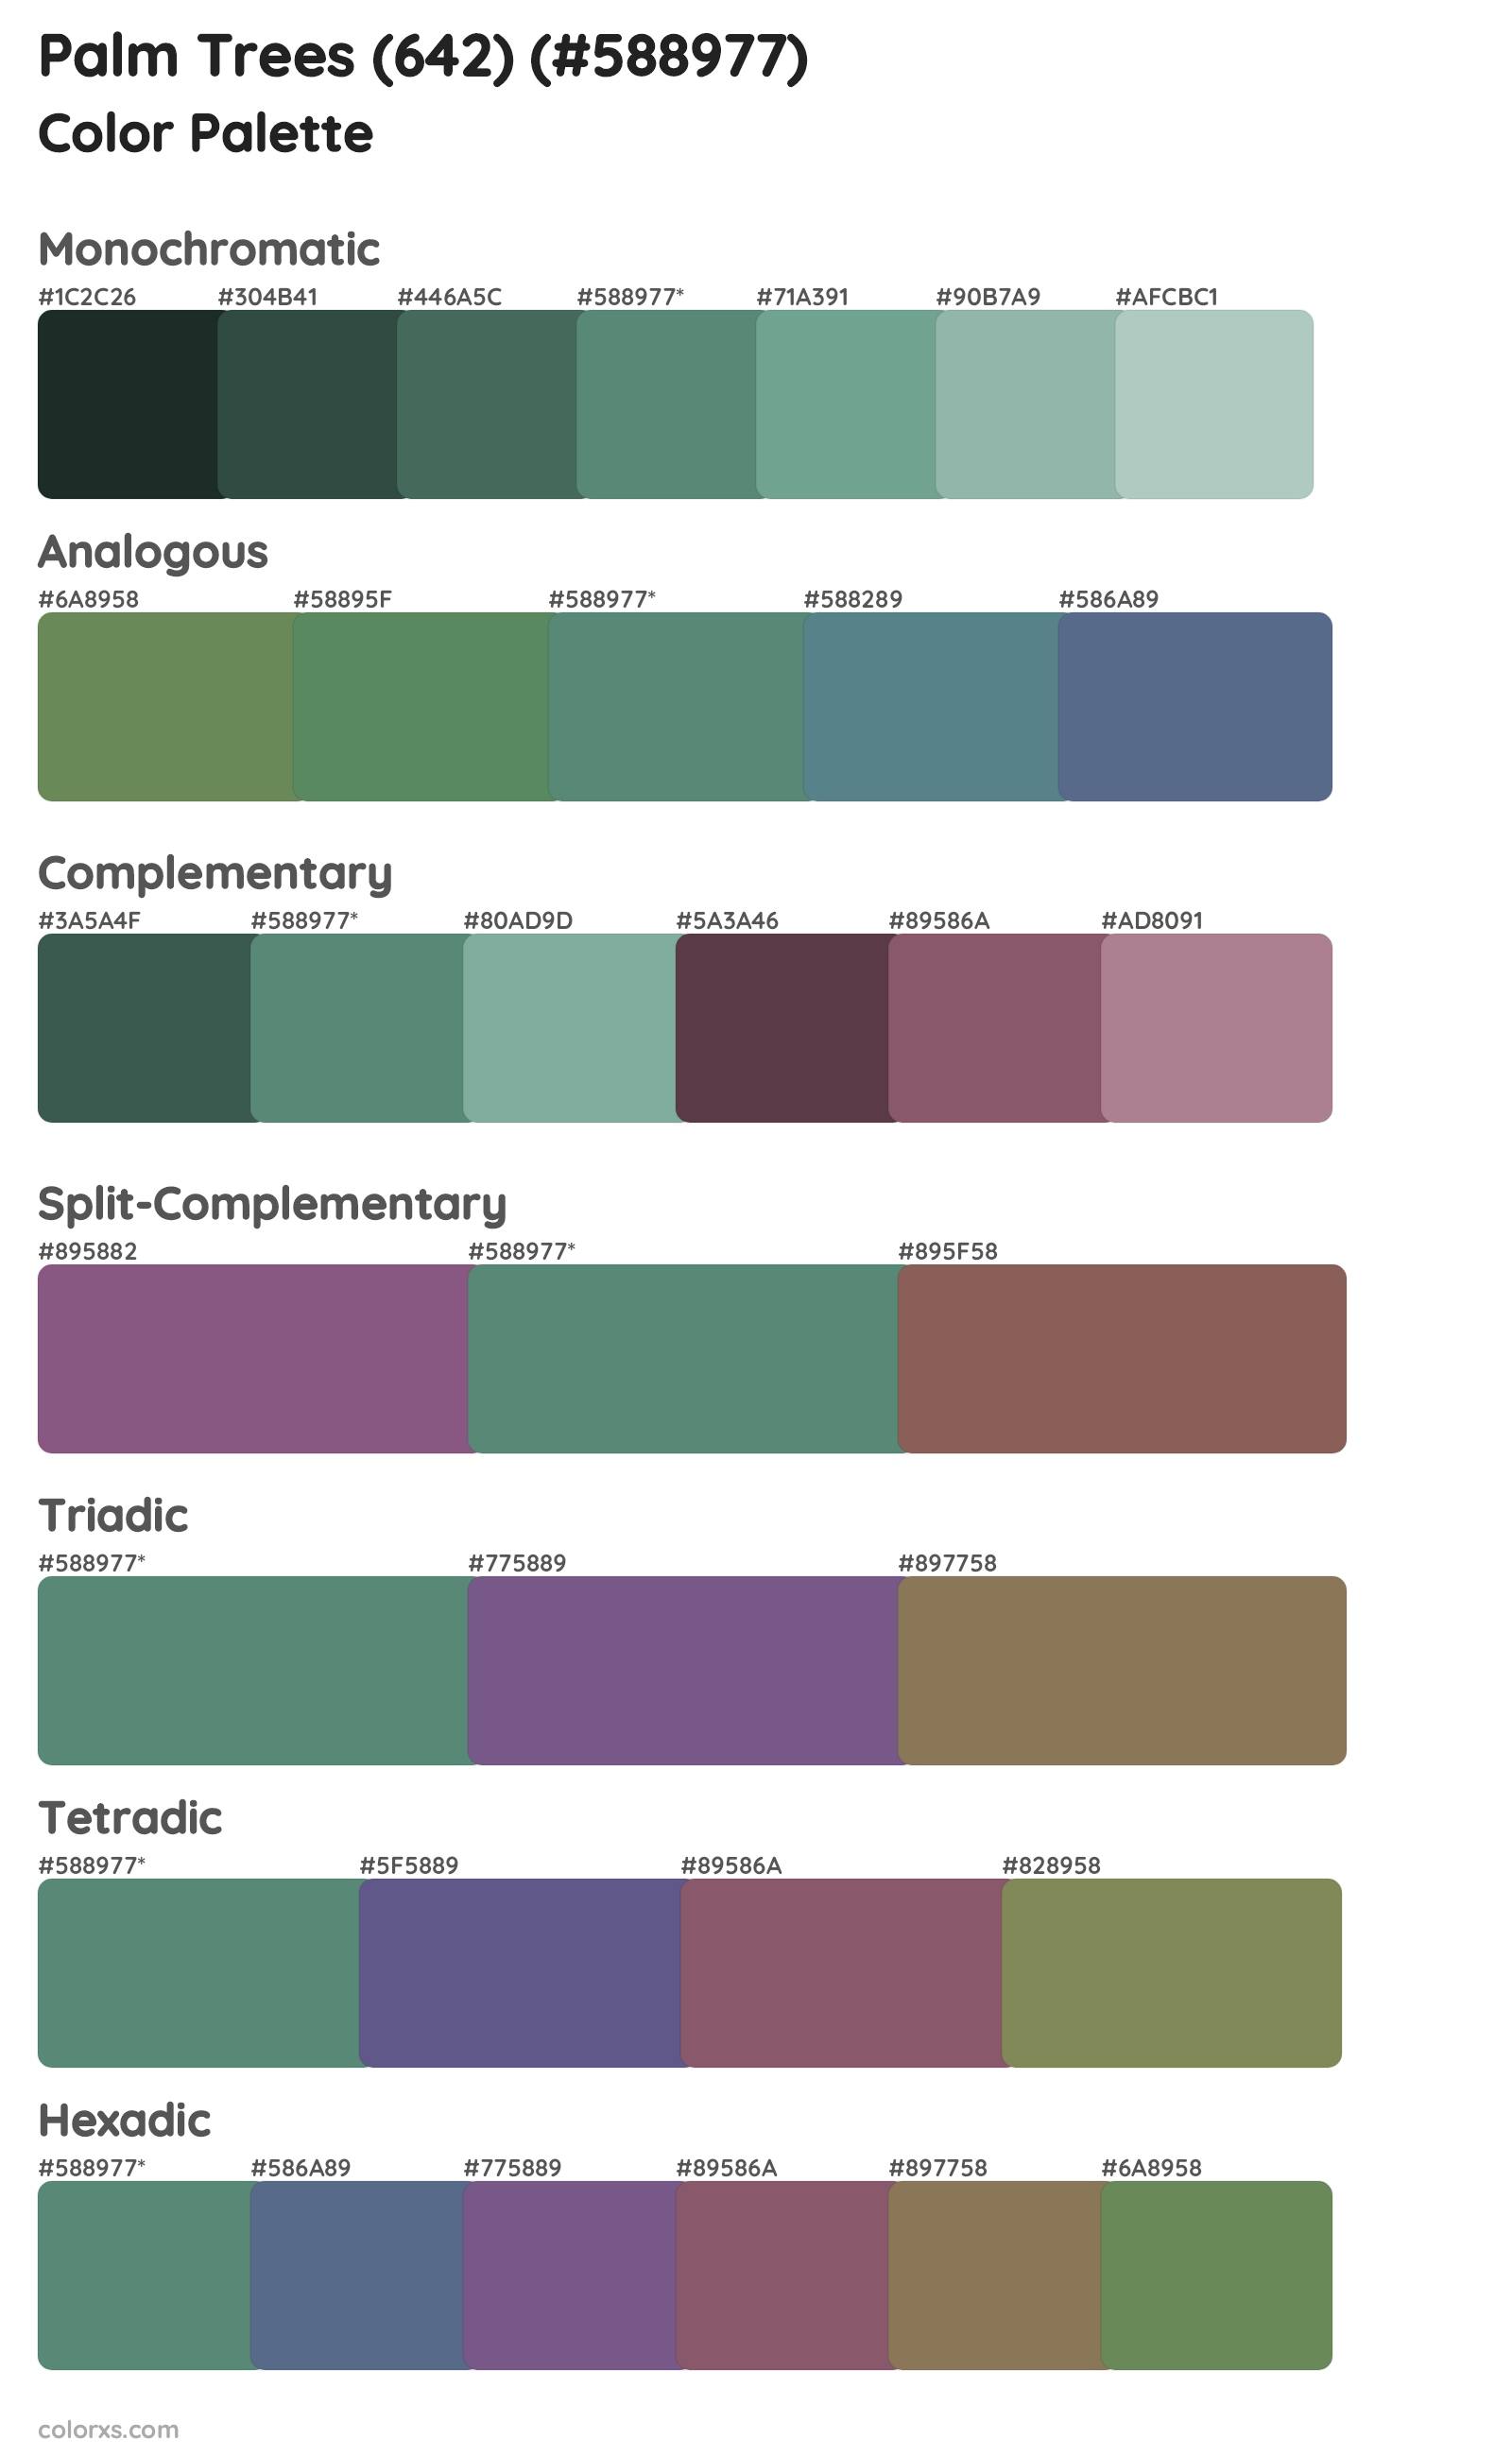 Palm Trees (642) Color Scheme Palettes